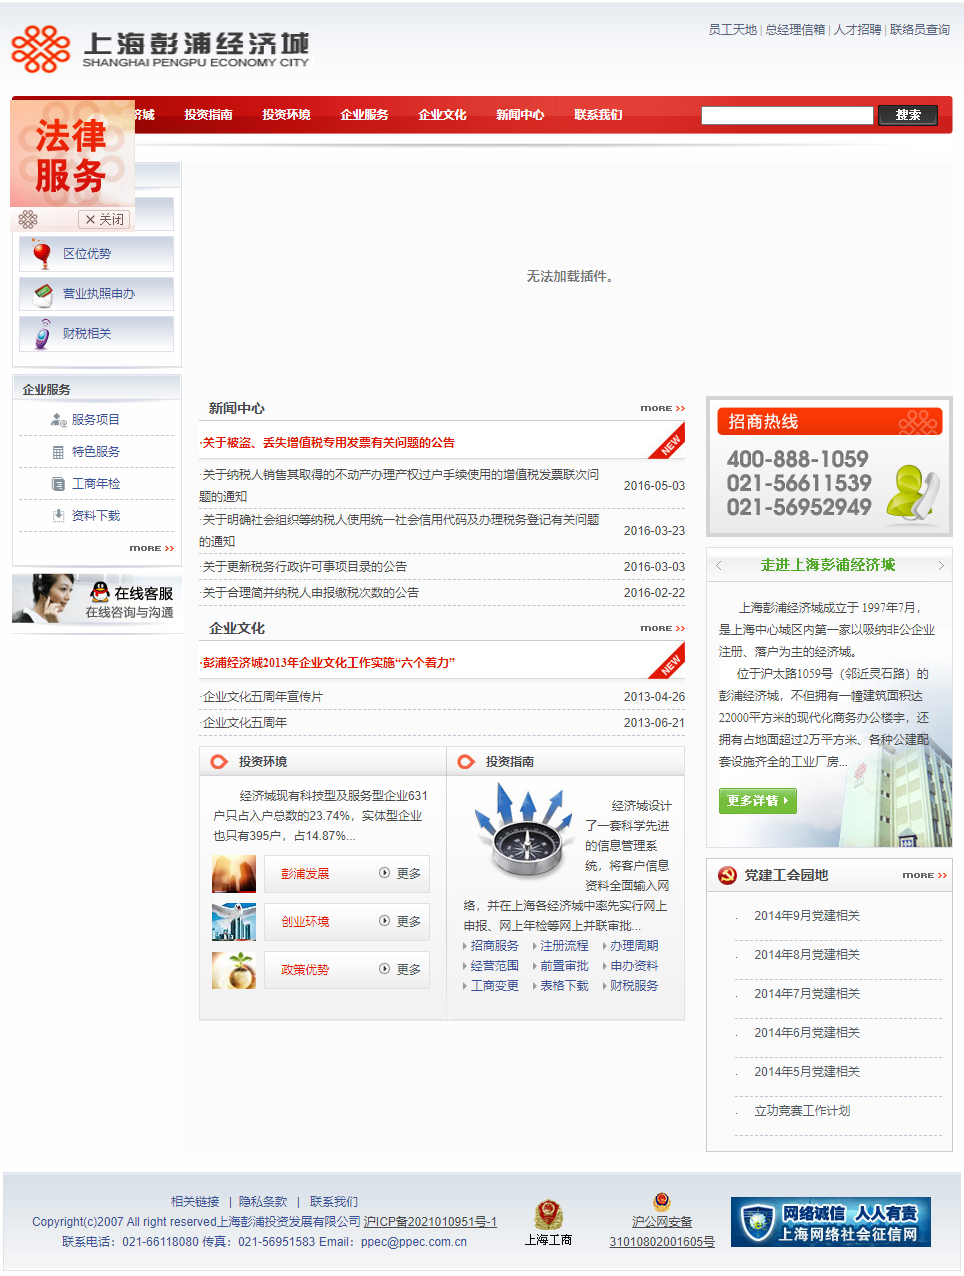 上海龙越经济发展有限公司网站案例